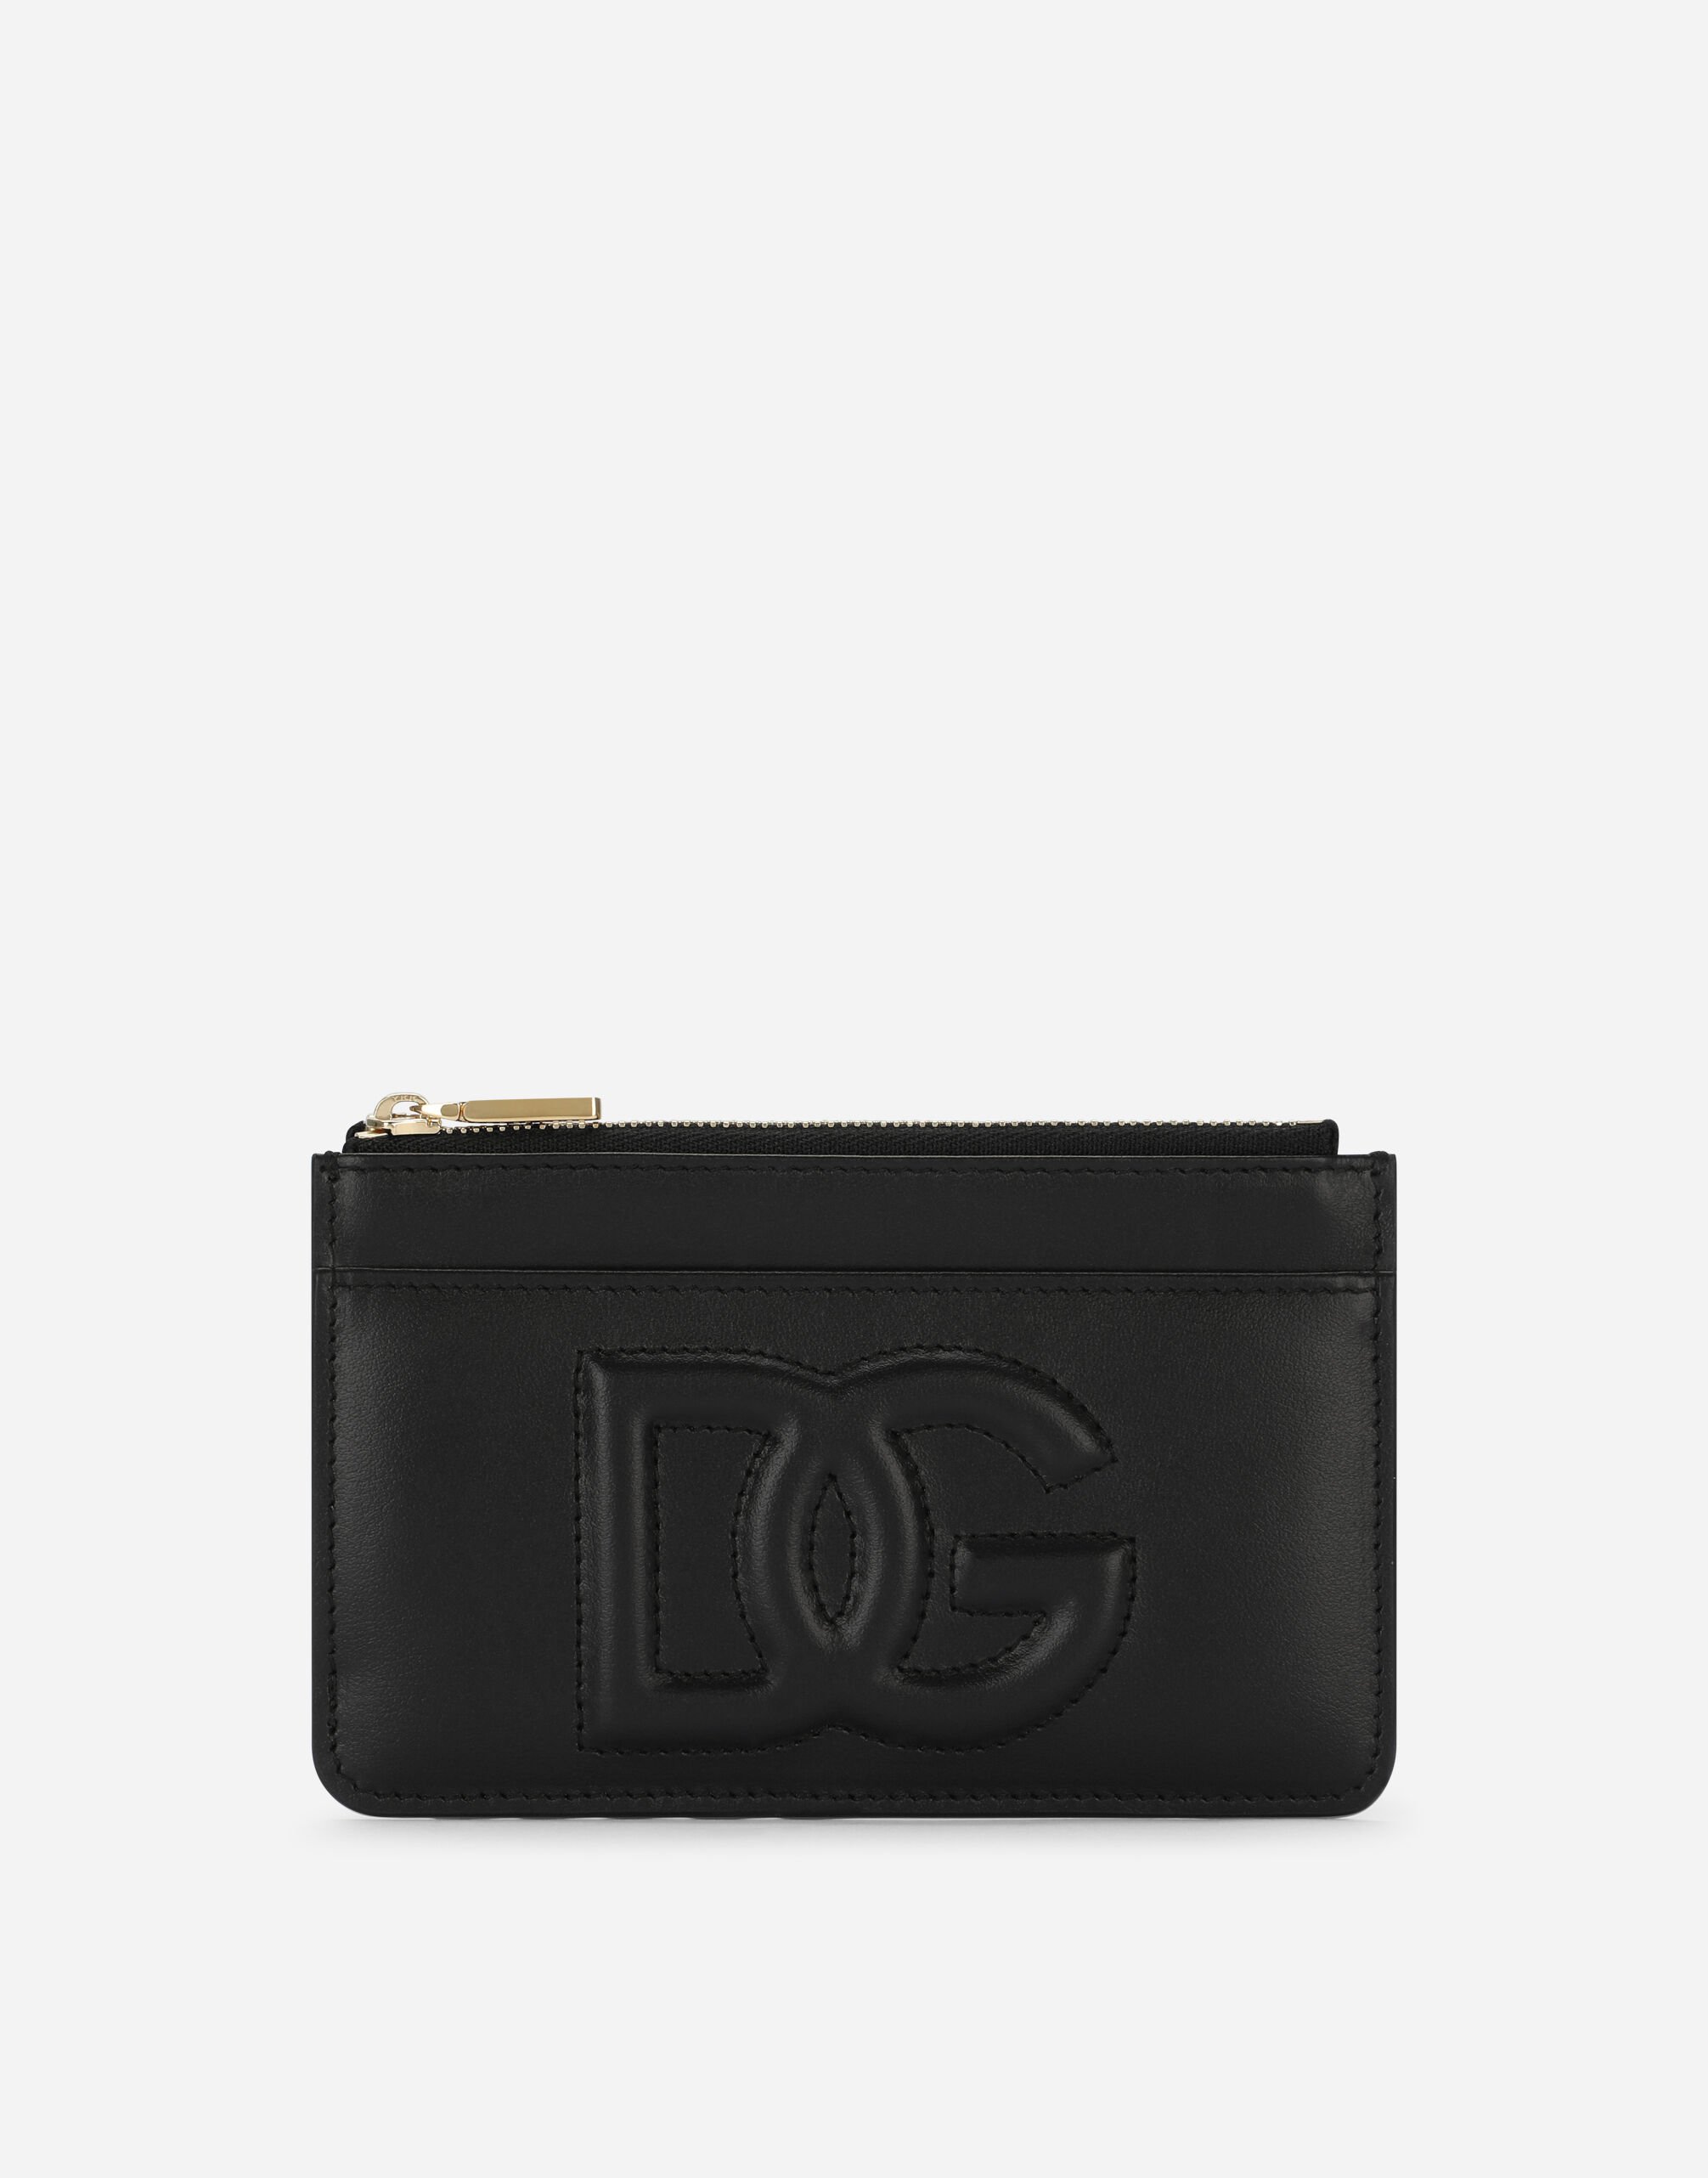 Dolce & Gabbana حافظة بطاقات متوسطة بشعار DG من جلد عجل أسود BI1261AW576